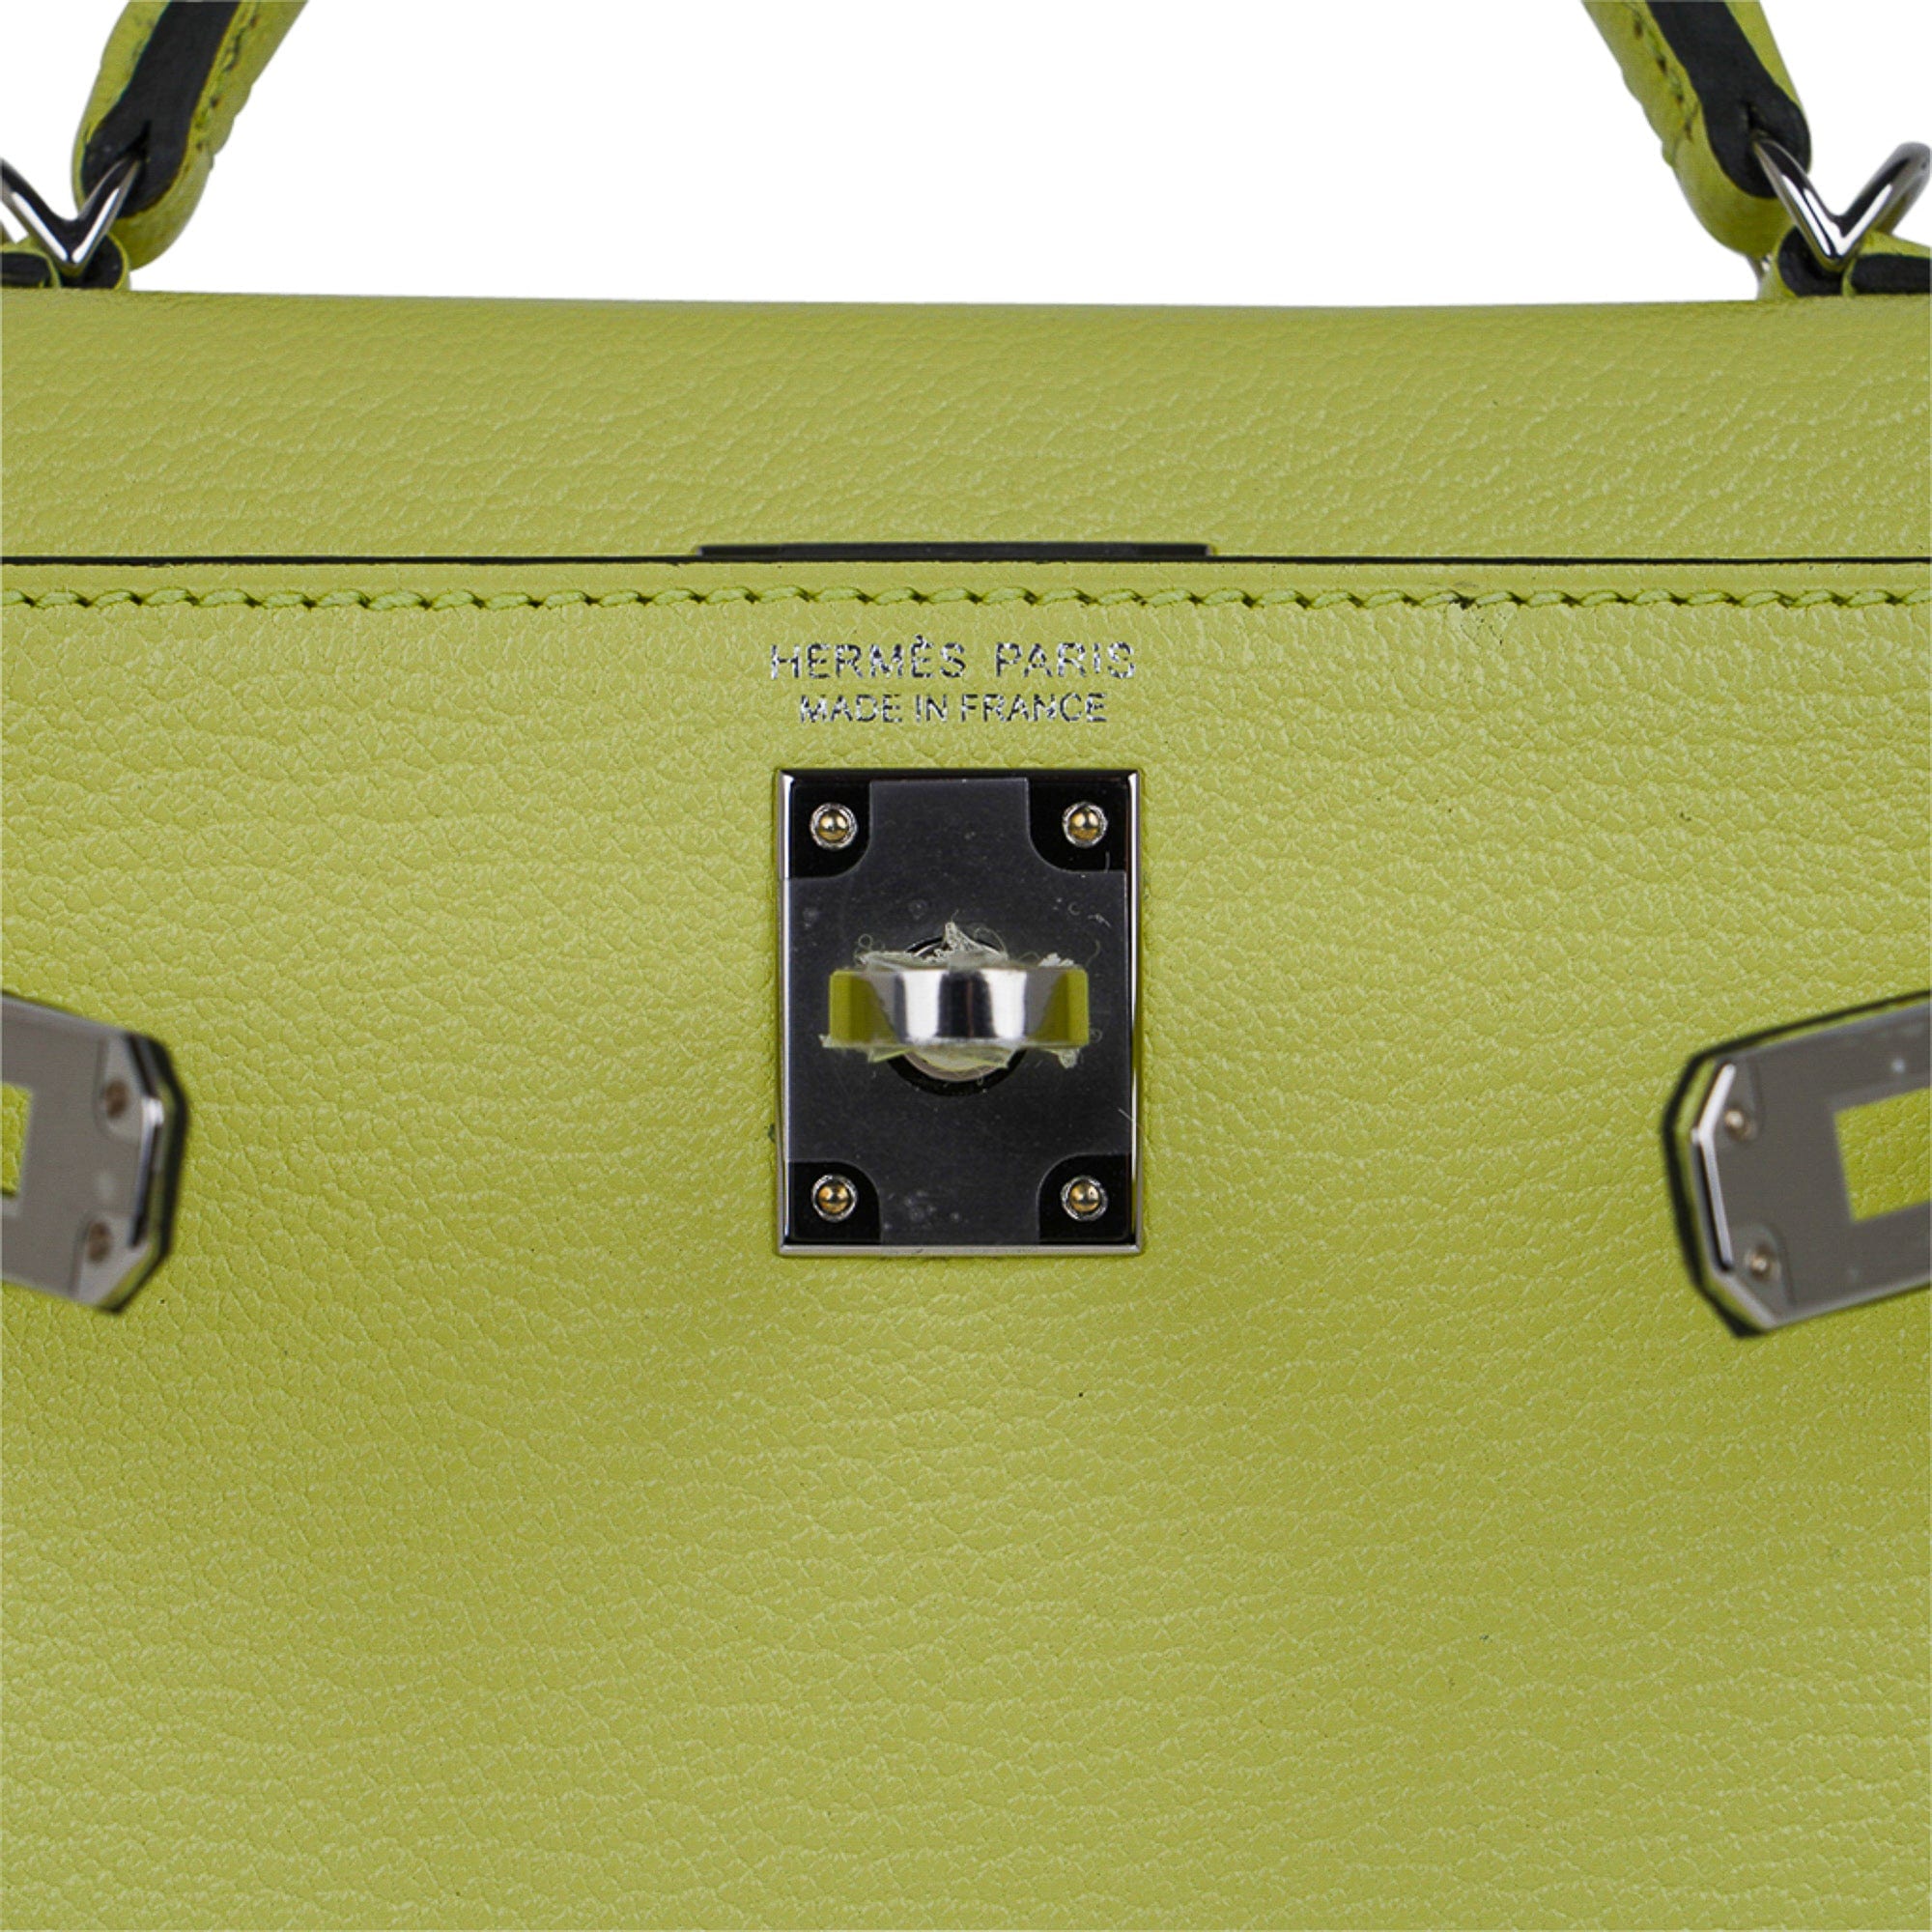 The New Hermes Birkin Sellier handbag • Petite in Paris